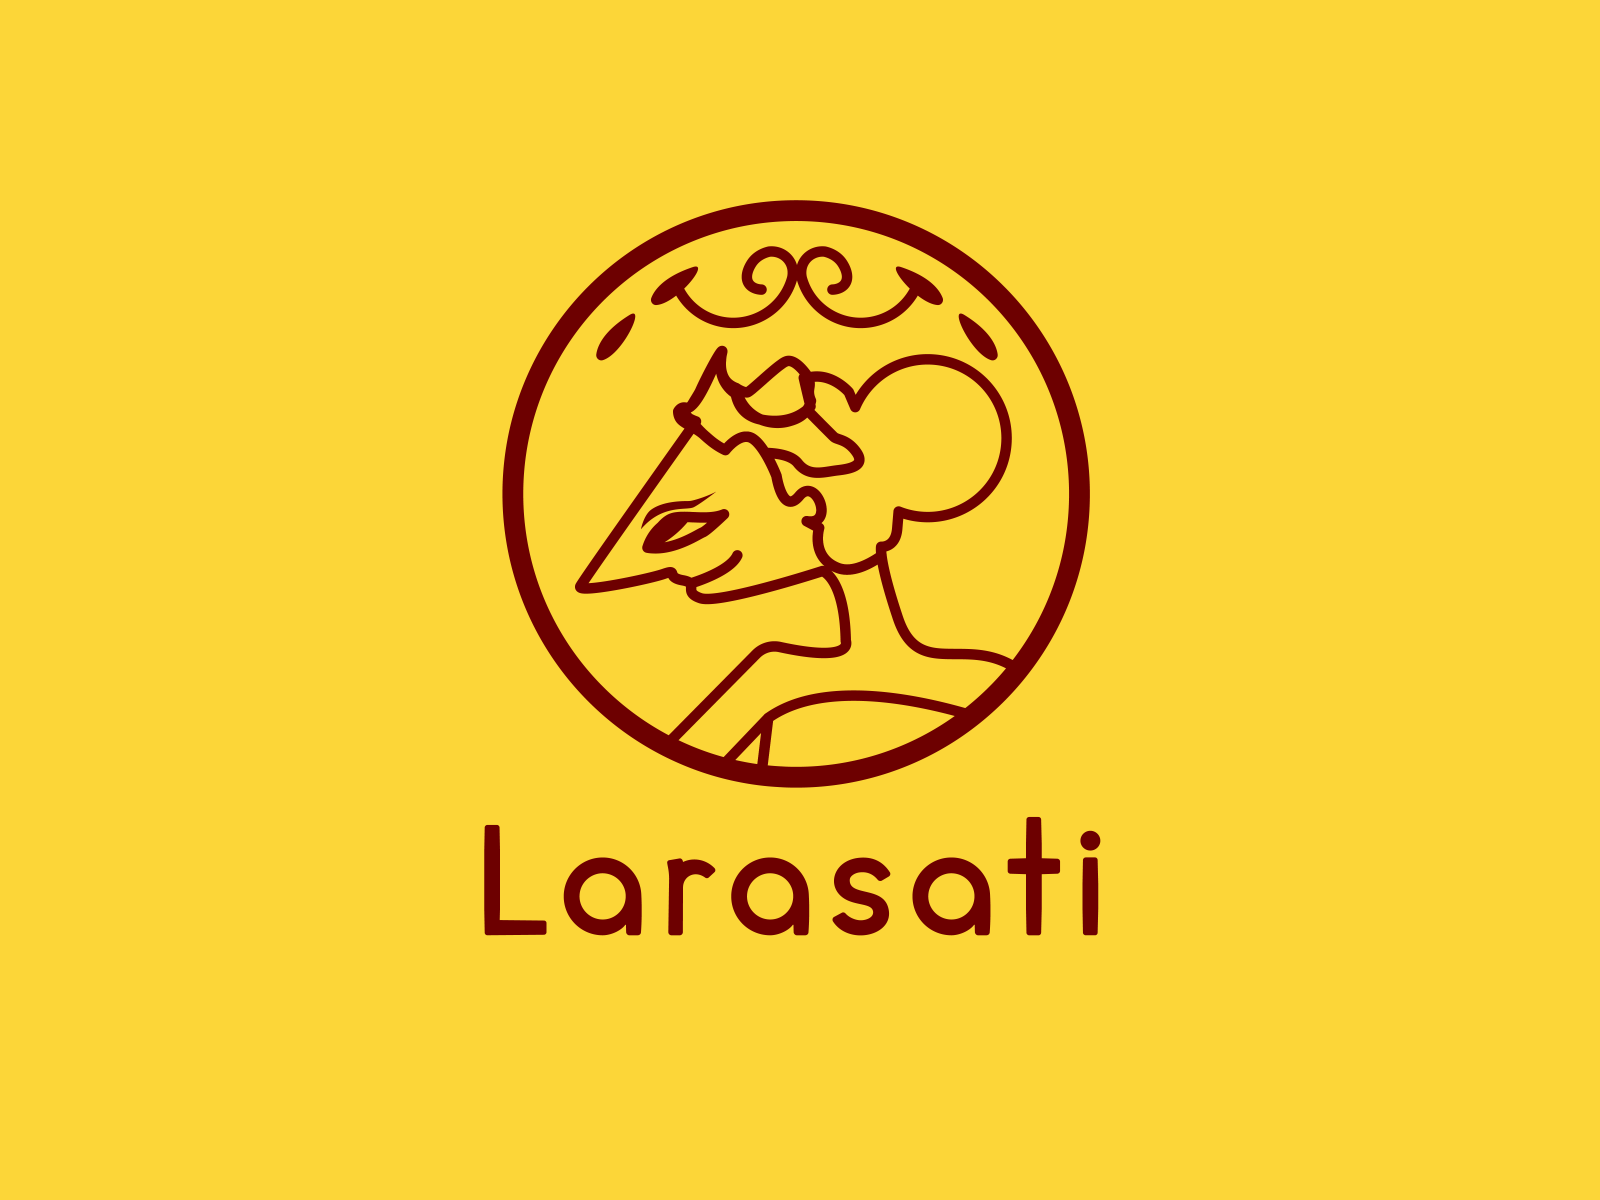 Logotipo de Larasati